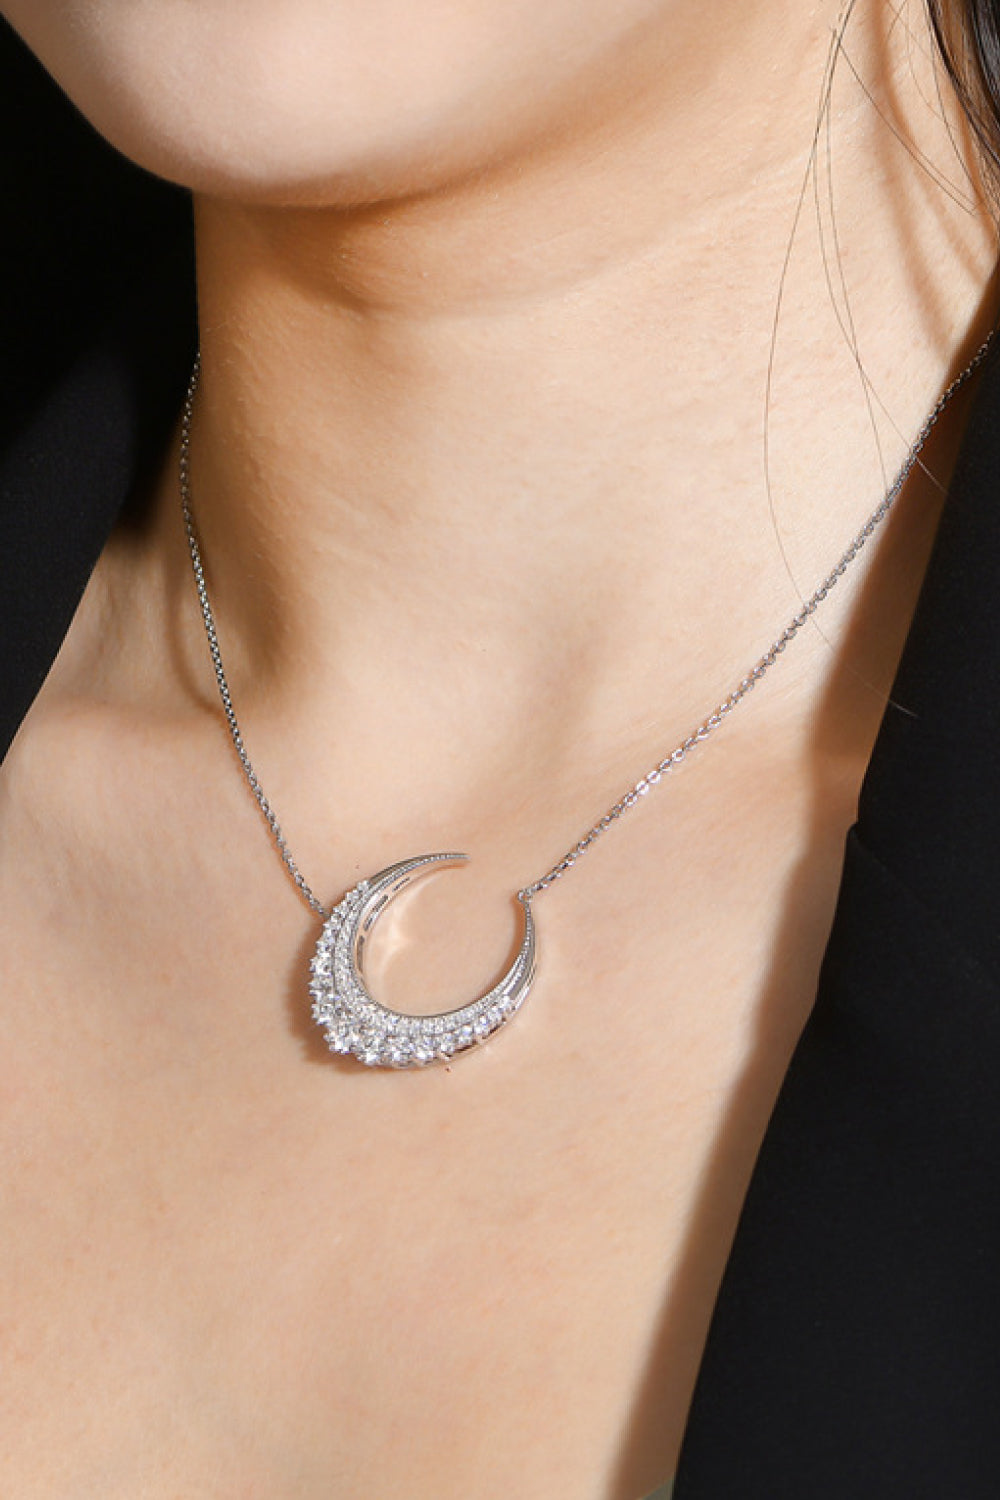 1.8 Carat Moissanite Crescent Moon Shape Pendant Necklace